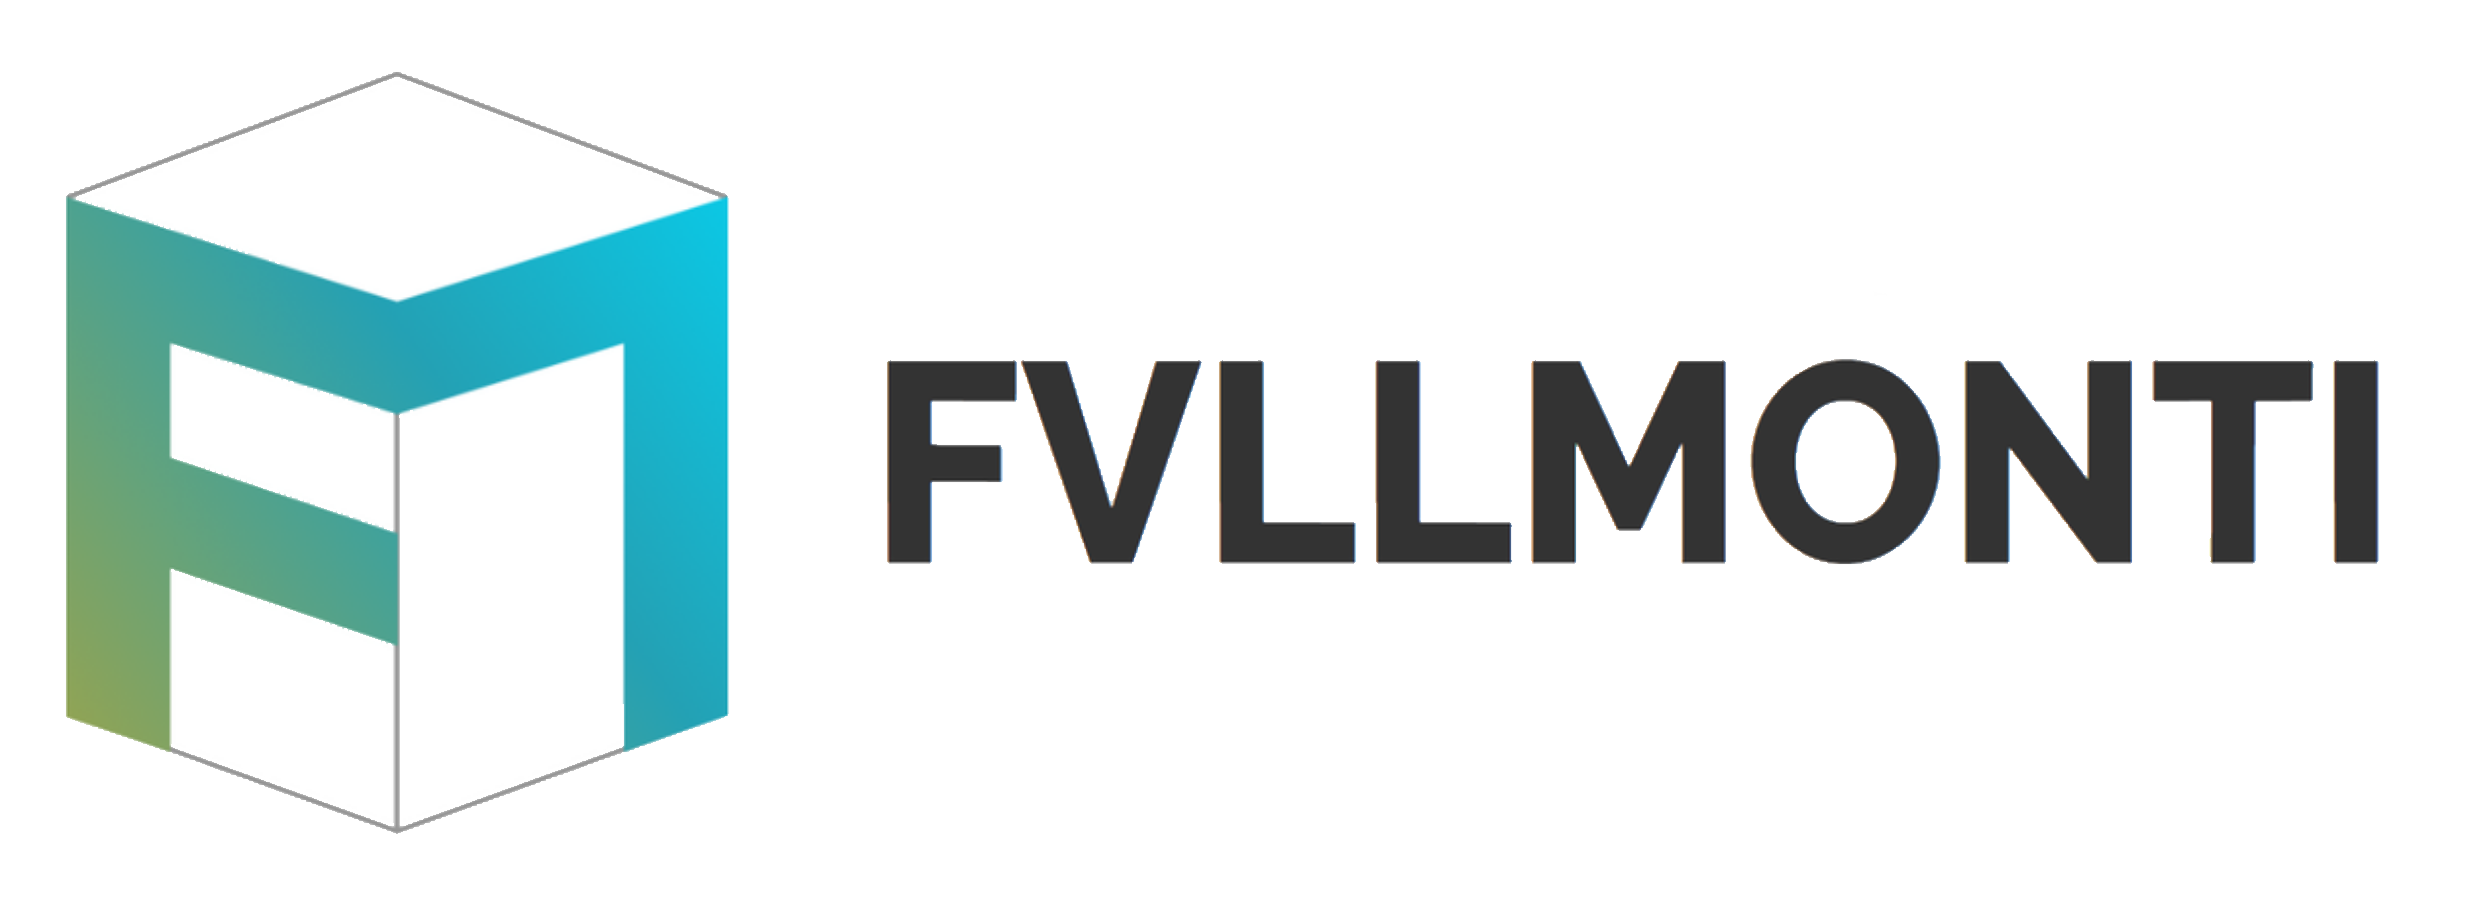 fvllmonti logo